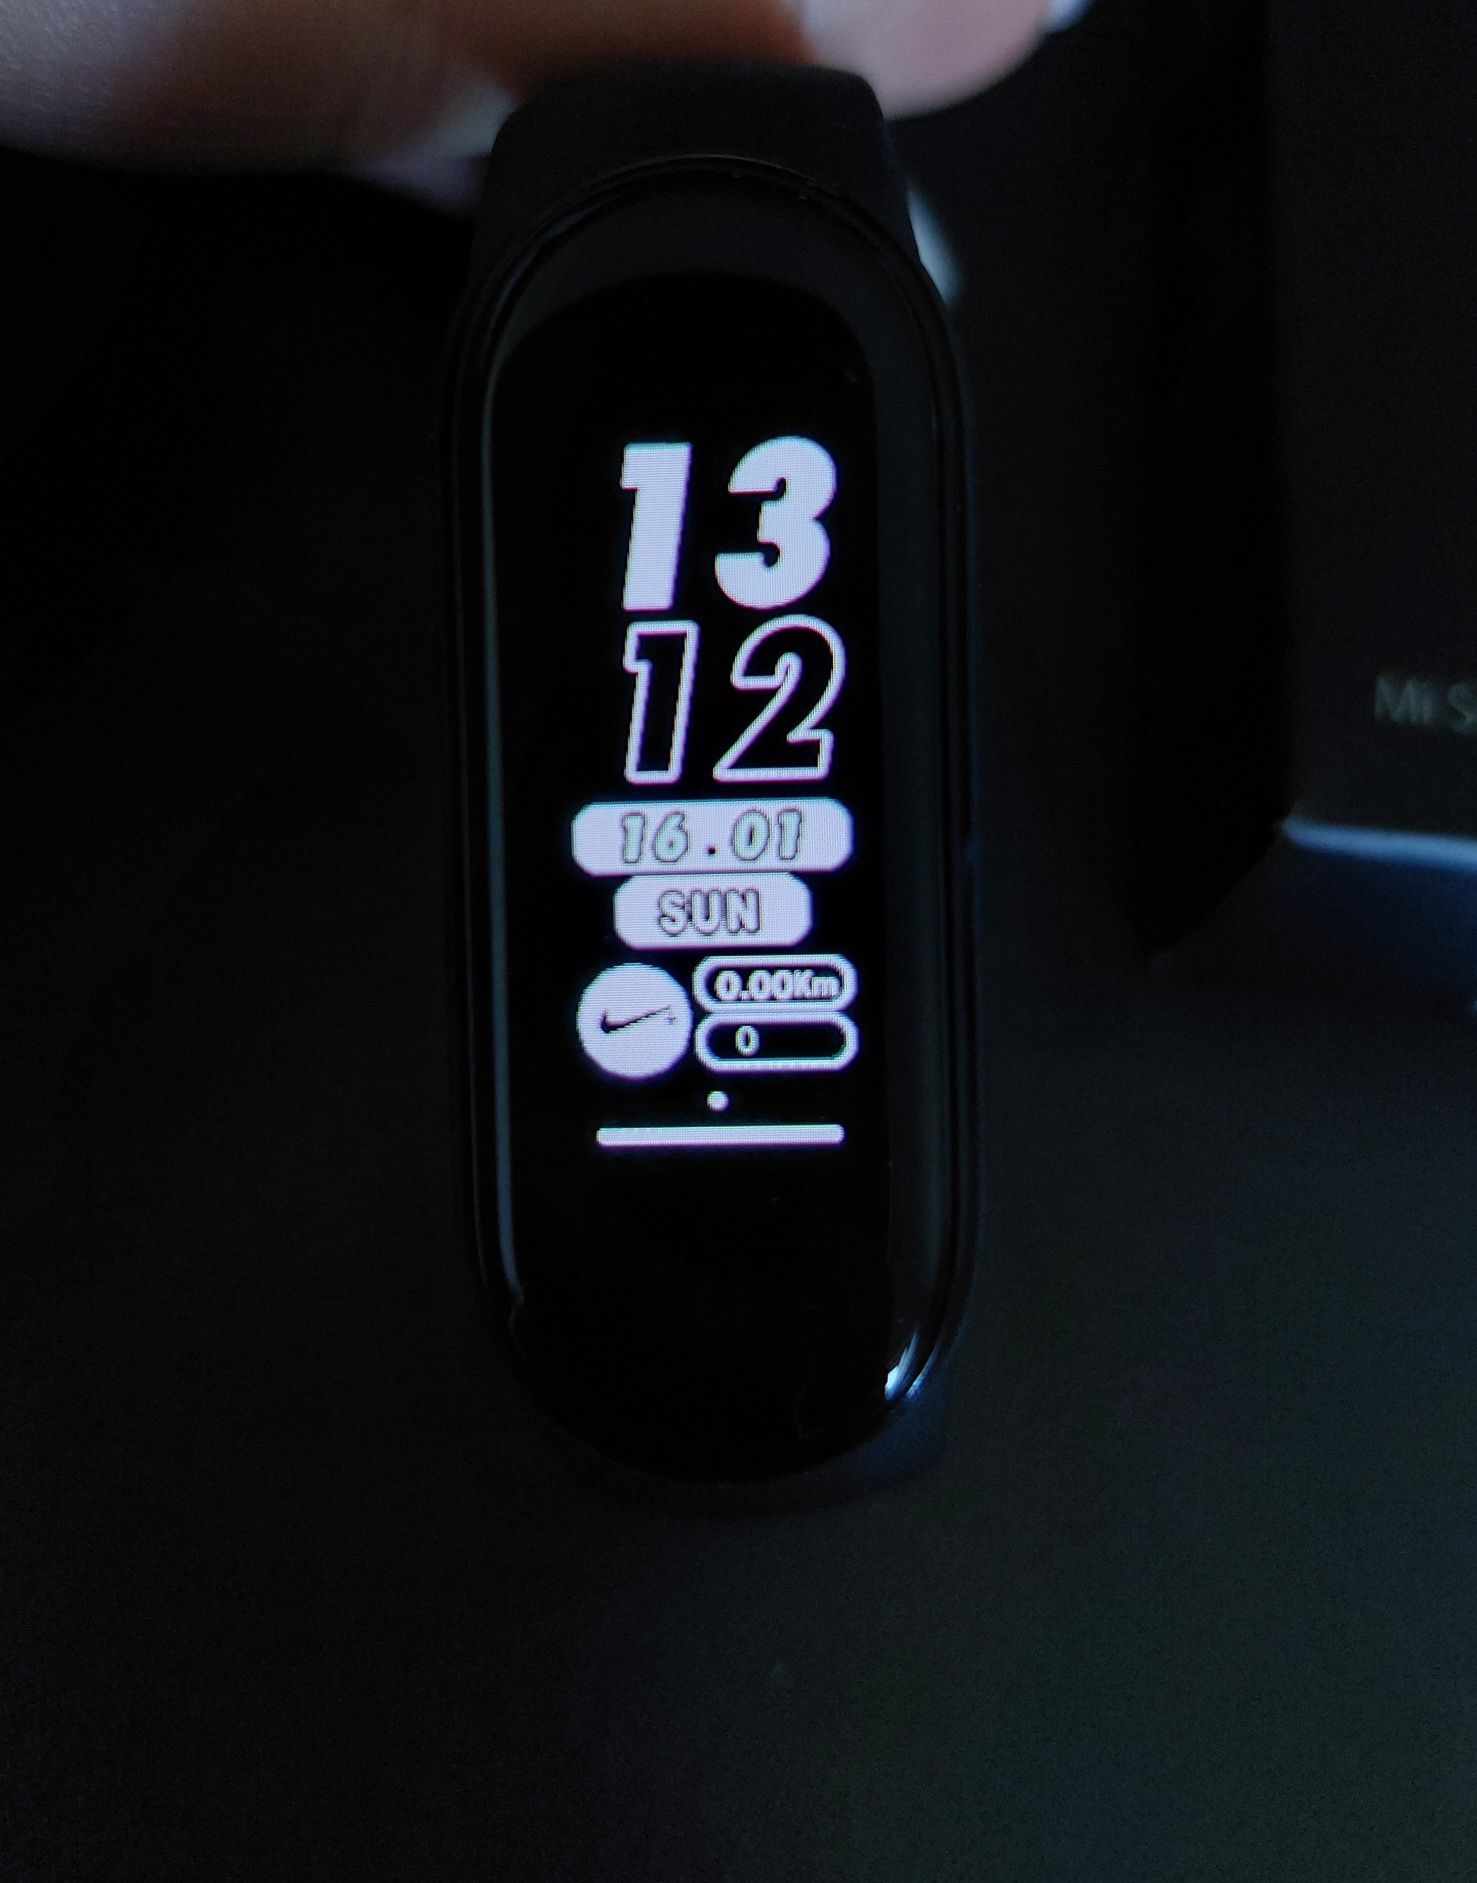 Opaska na rękę smartwatch Xiaomi Mi Smart Band 5 stan idealny